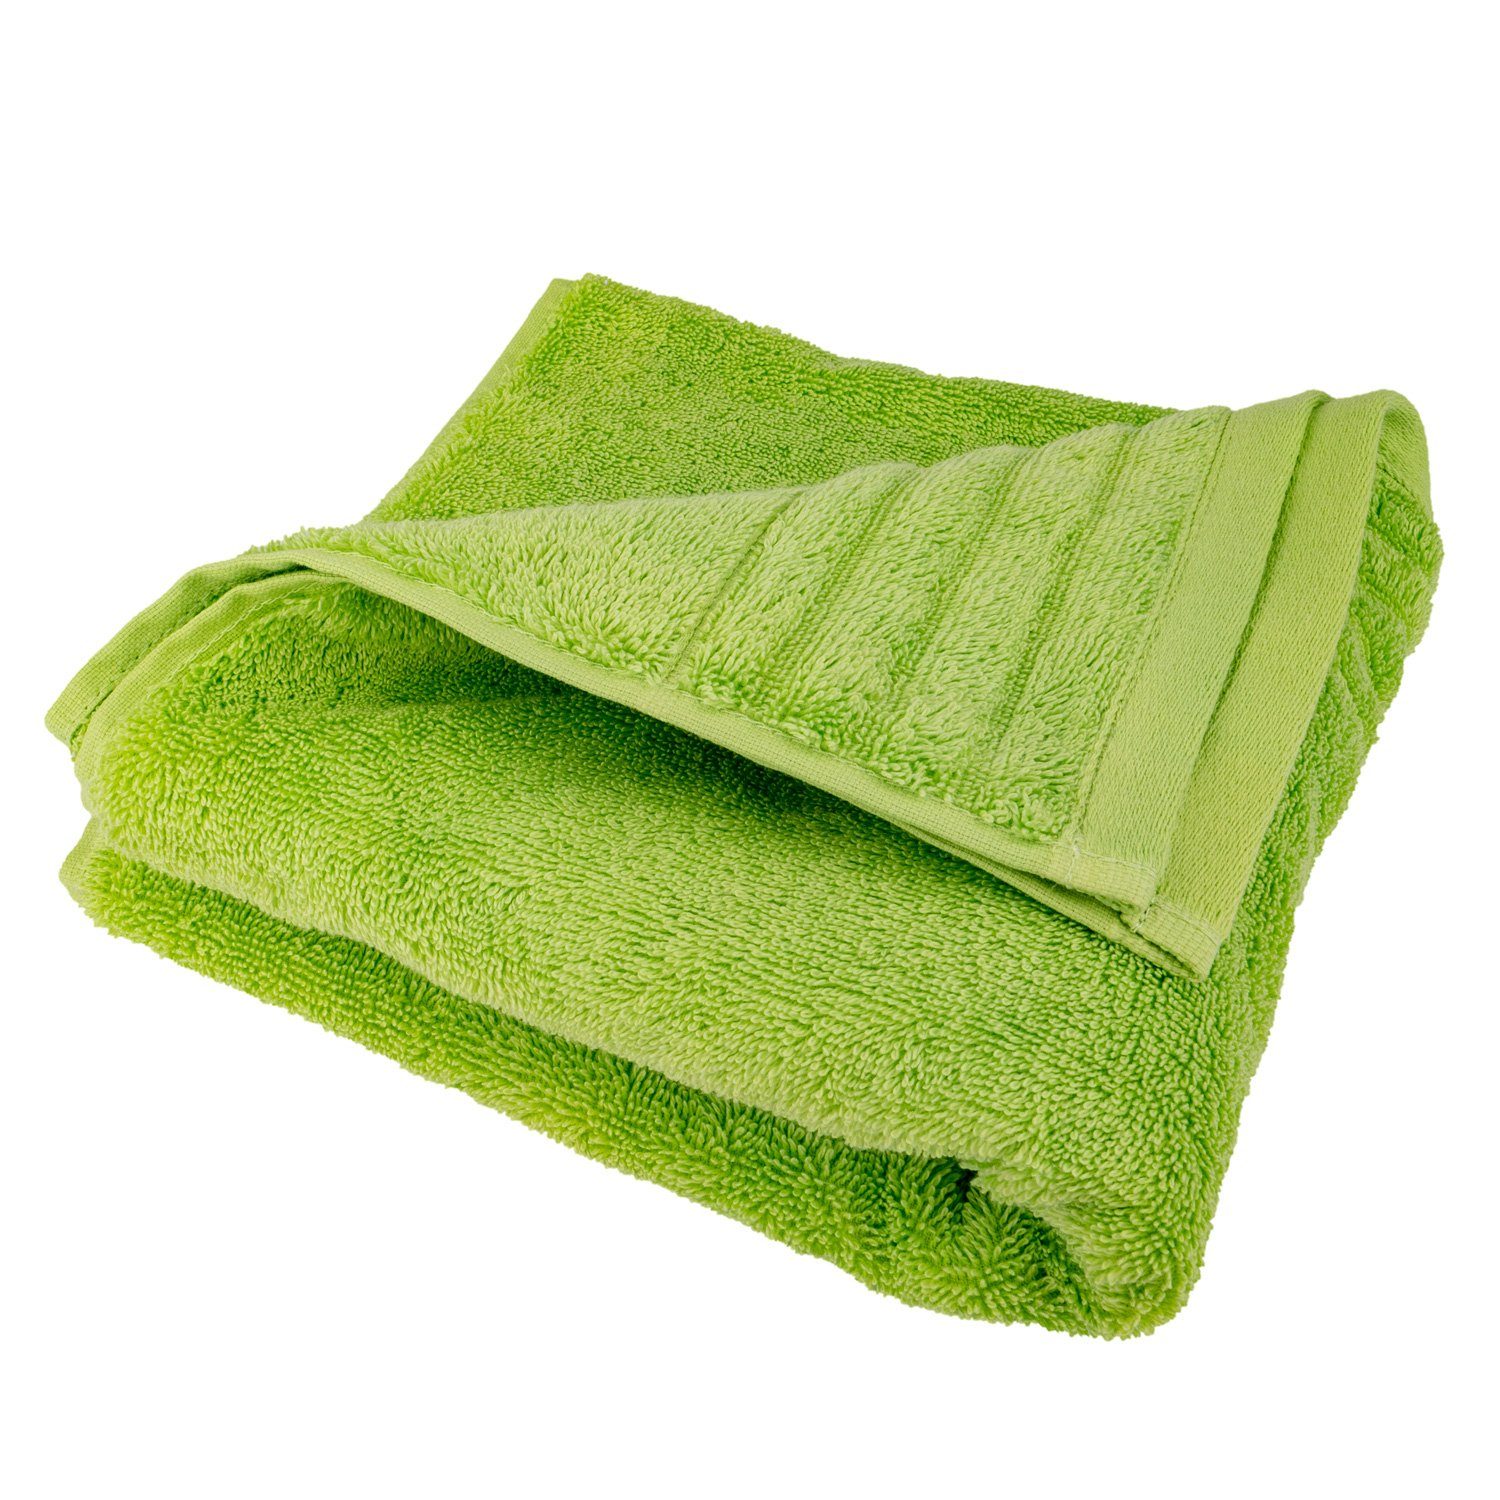 600g/m² Frottier grün Premium-Line, mit Baumwolle Badetuch Traumschloss Supima (1-St), amerikanische 100%